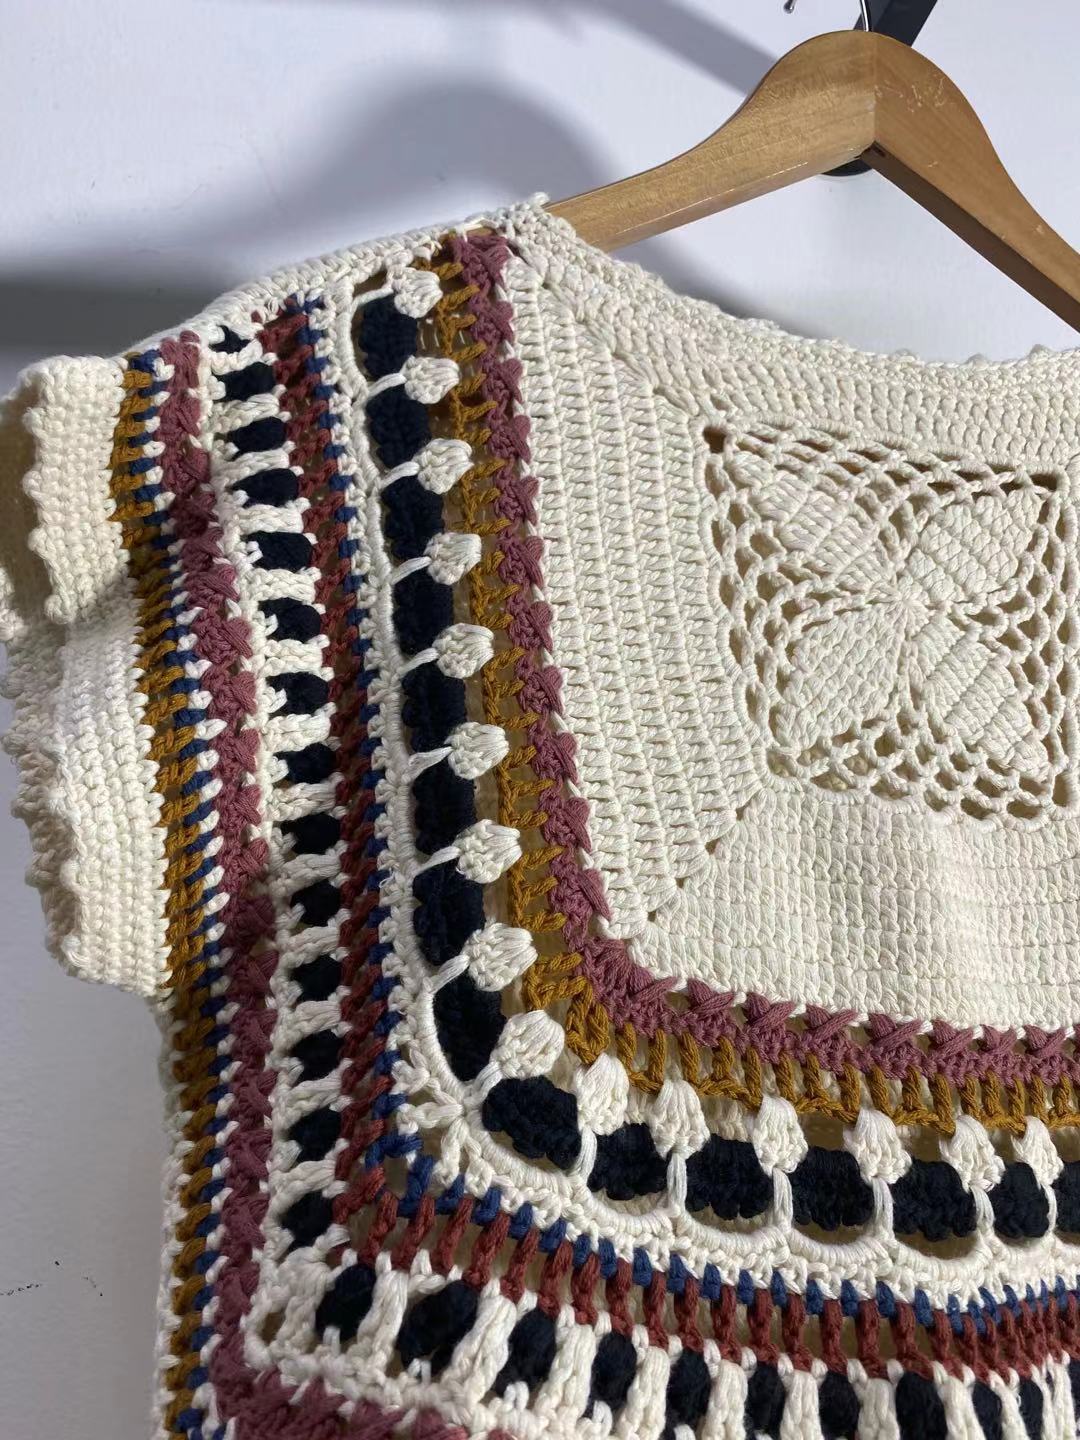 Heavy Industry Crochet Knitted Pullover Vest Fancy Yarn Cotton